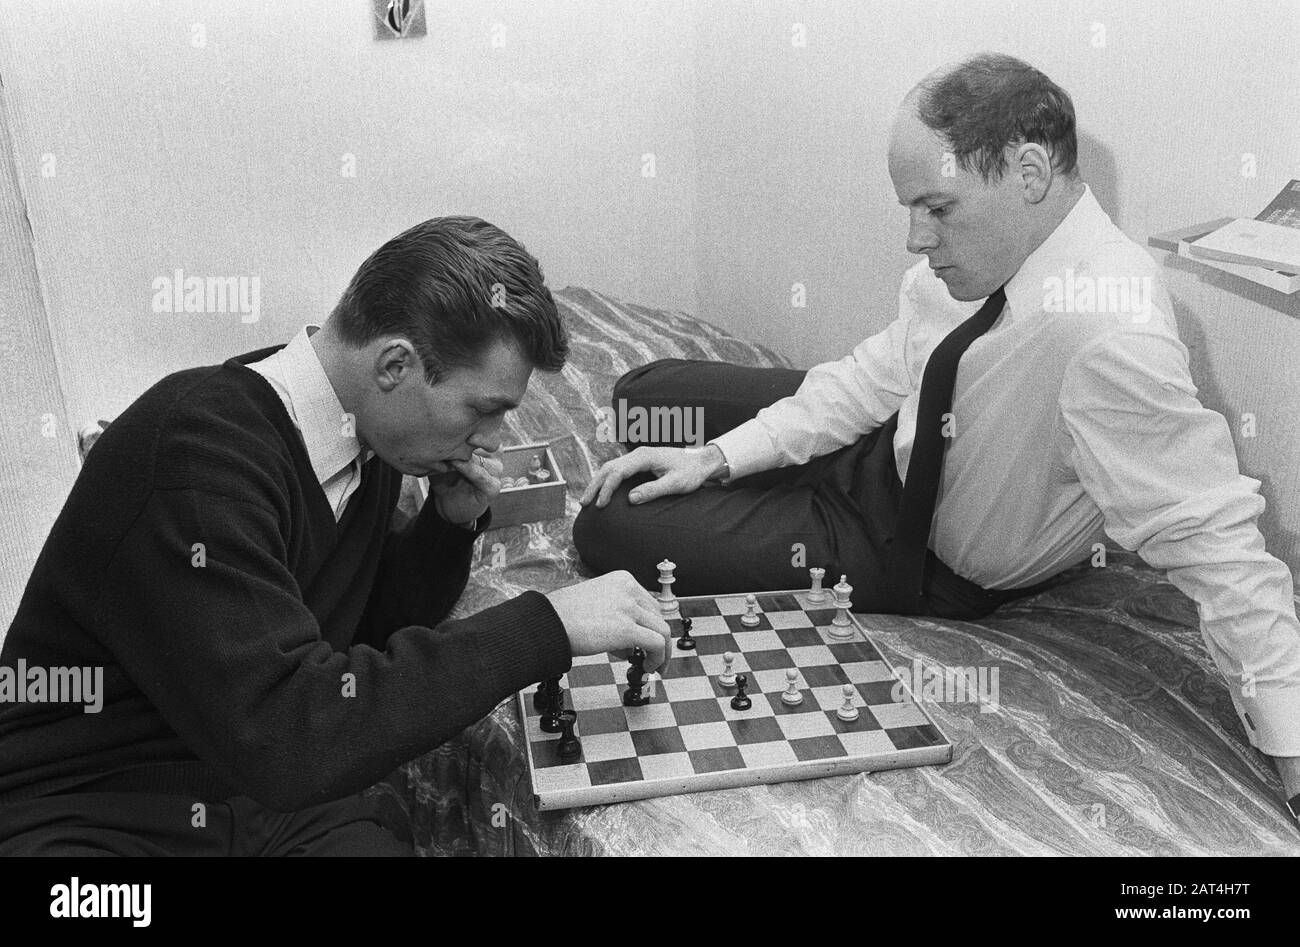 Jan Mulder (à gauche) et Gerard 'Pummie' Bergholtz à Anderlecht, jouer un jeu d'échecs Date: 14 février 1966 lieu: Belgique, Bruxelles mots clés: Échecs, sport, football, footballeurs Nom personnel: Bergholtz, Gerard, Mulder, Jan Banque D'Images